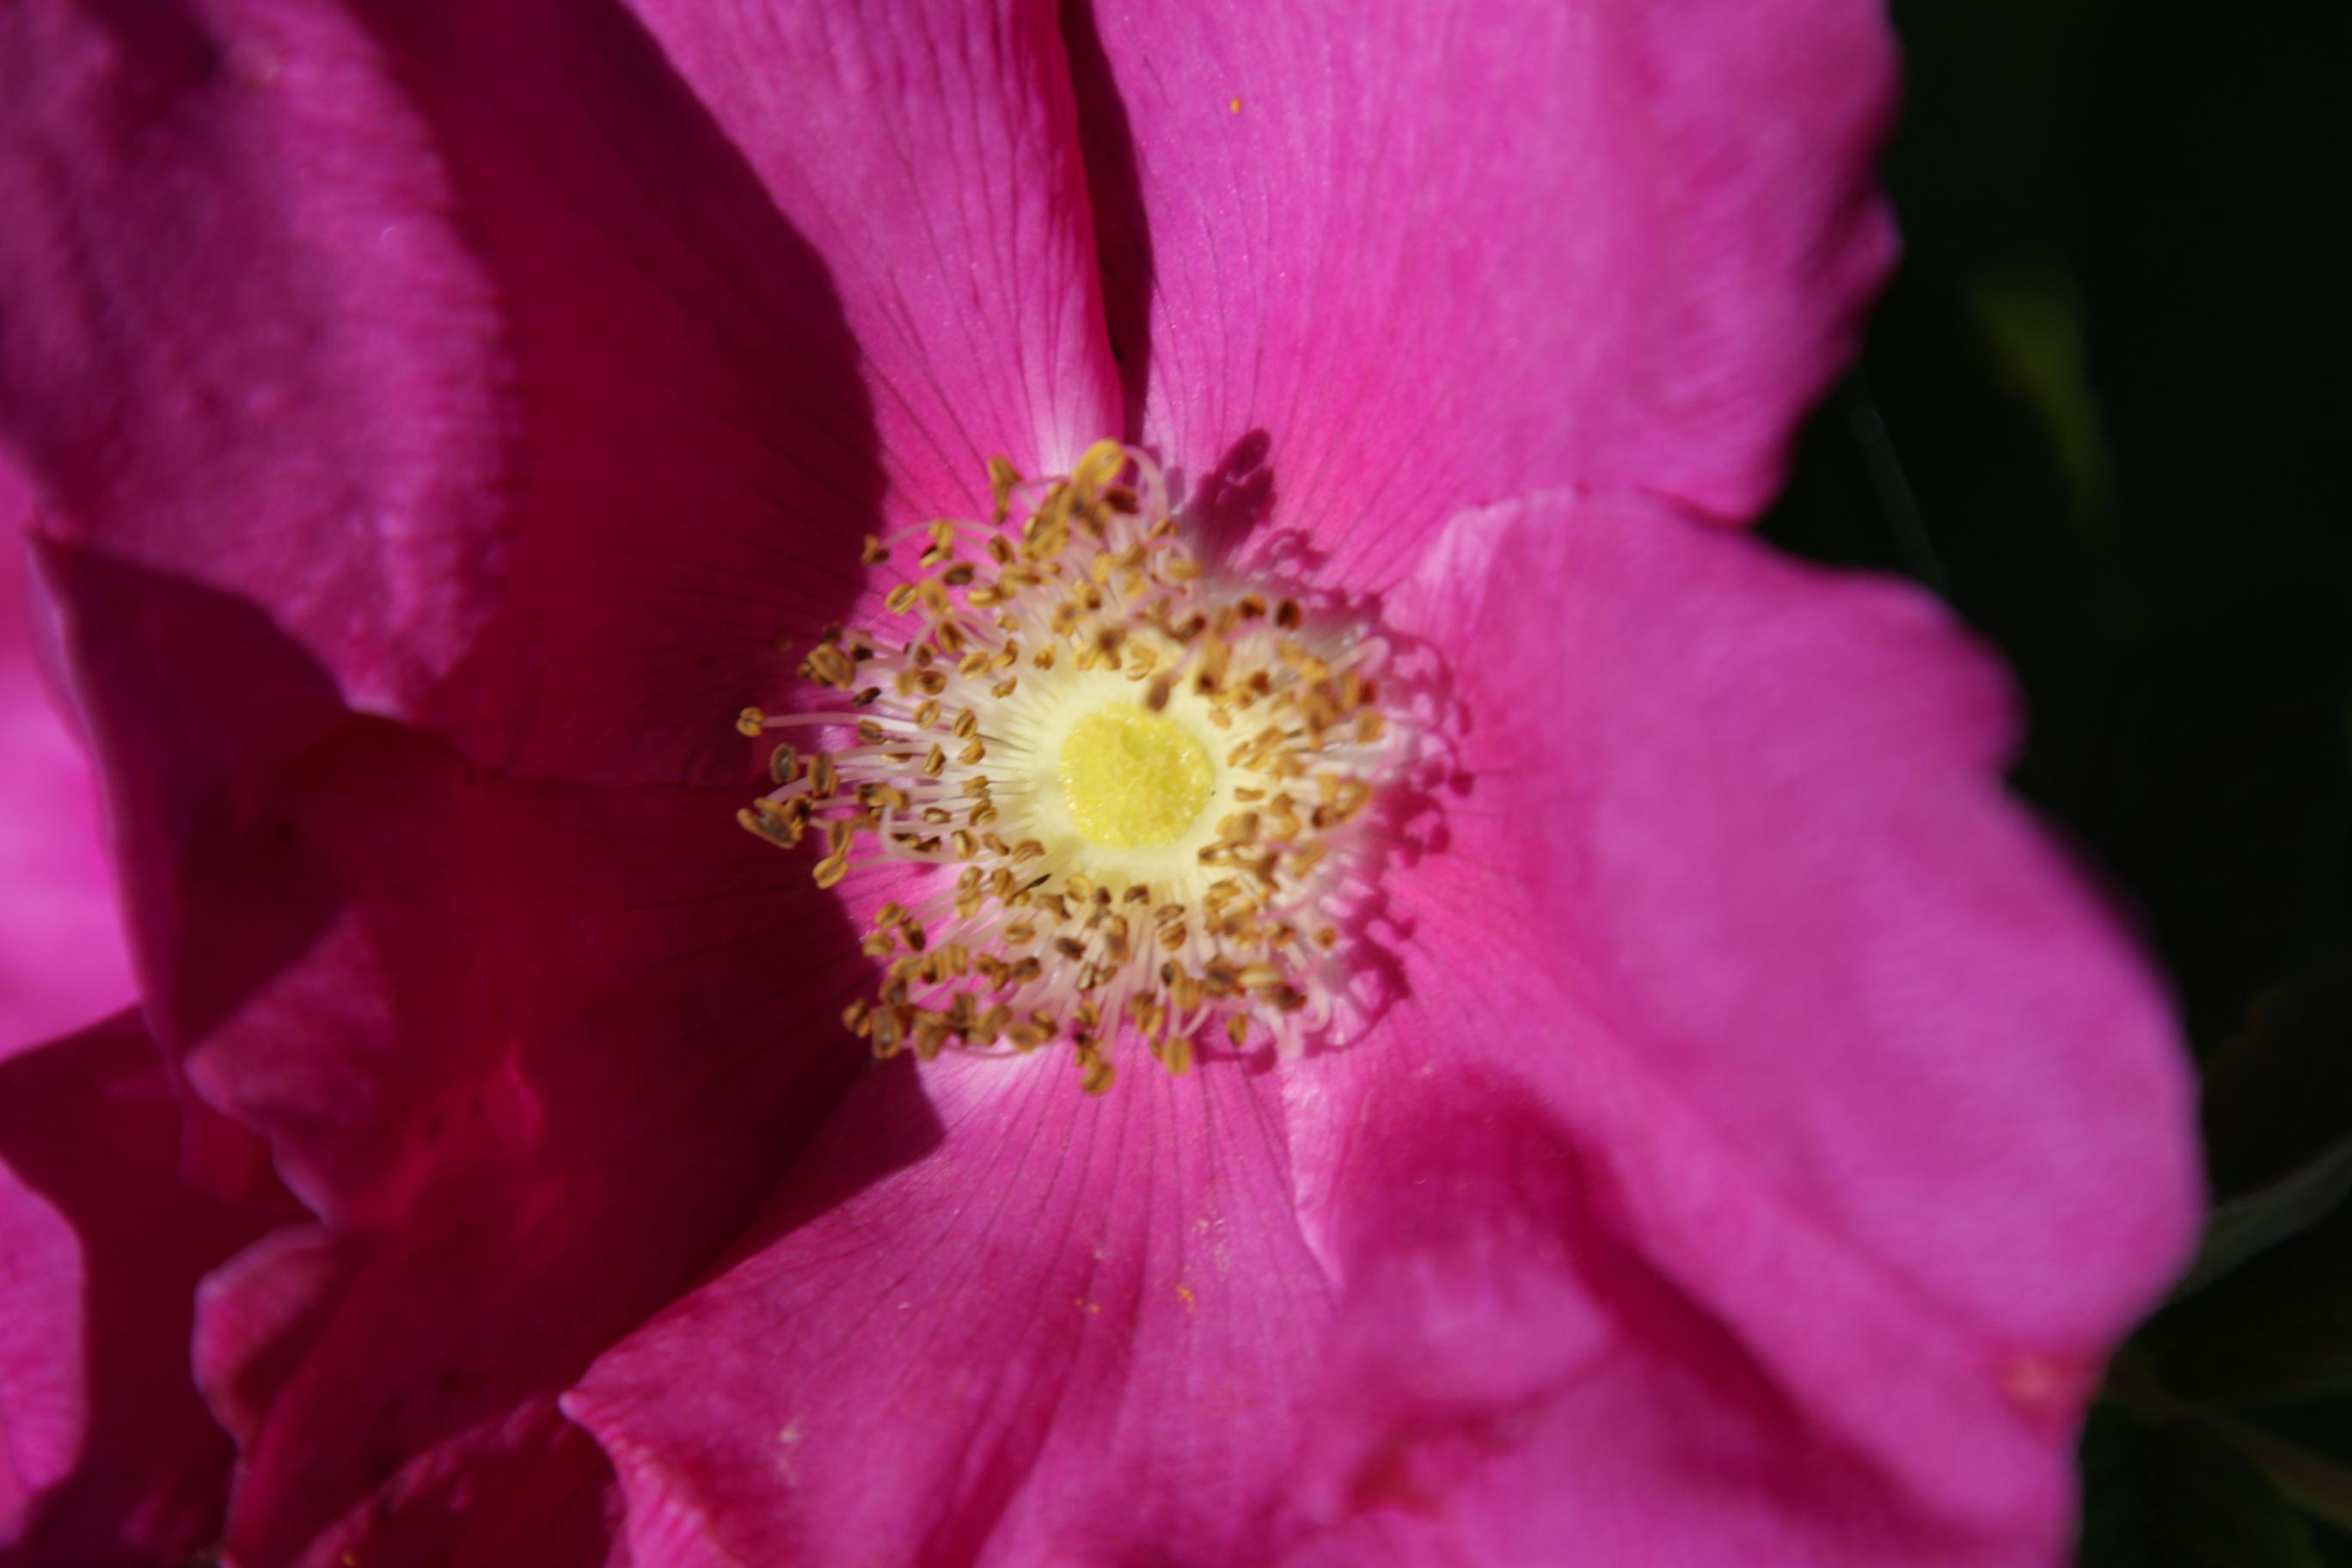 Olio di rosa mosqueta puro: contro smagliature e rughe